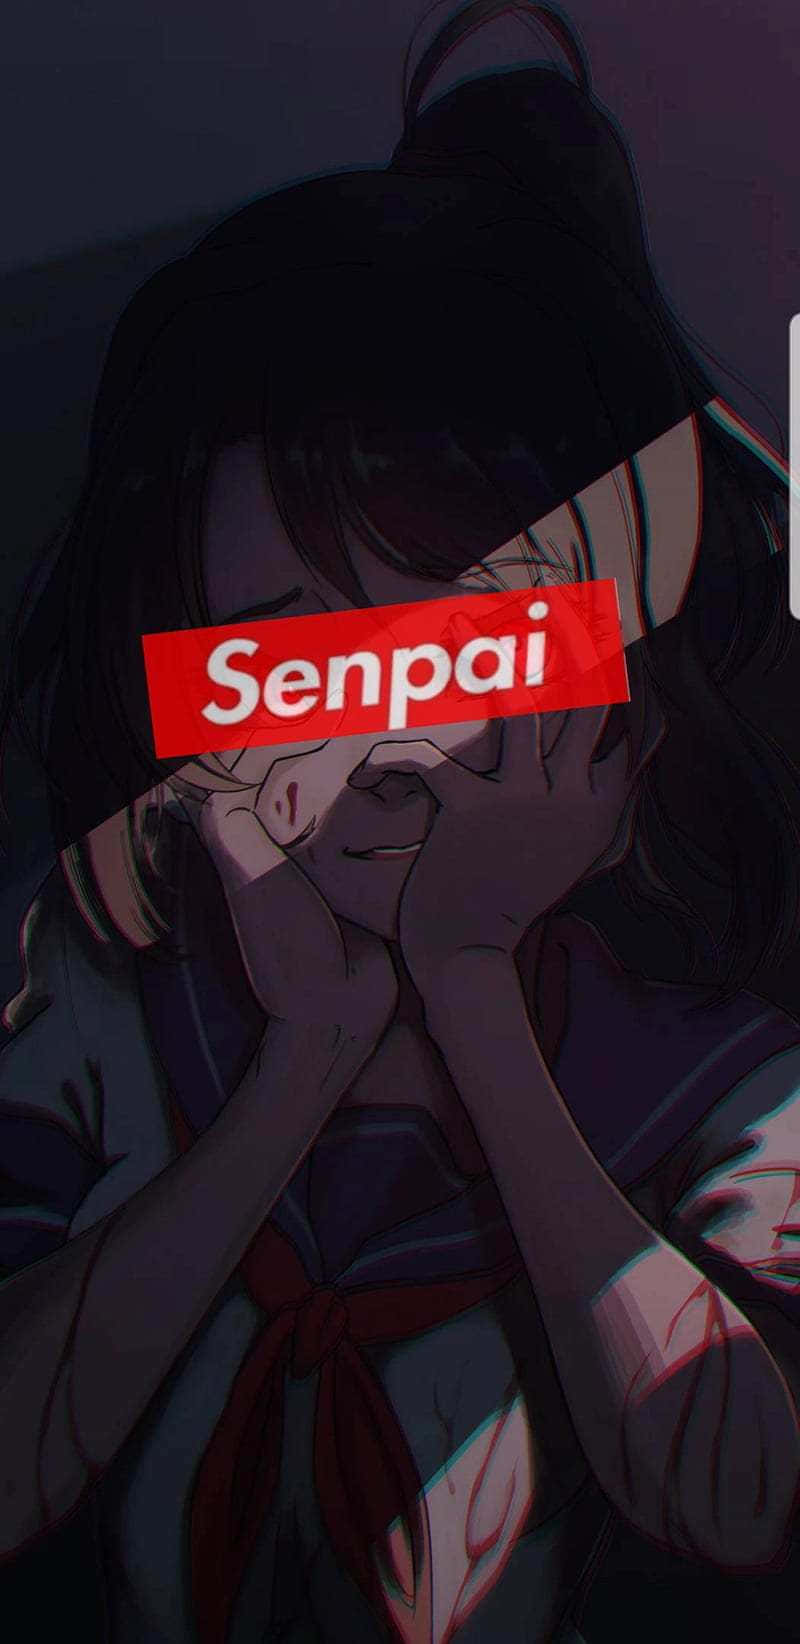 Blushing Anime Girl With Senpai Bar Wallpaper